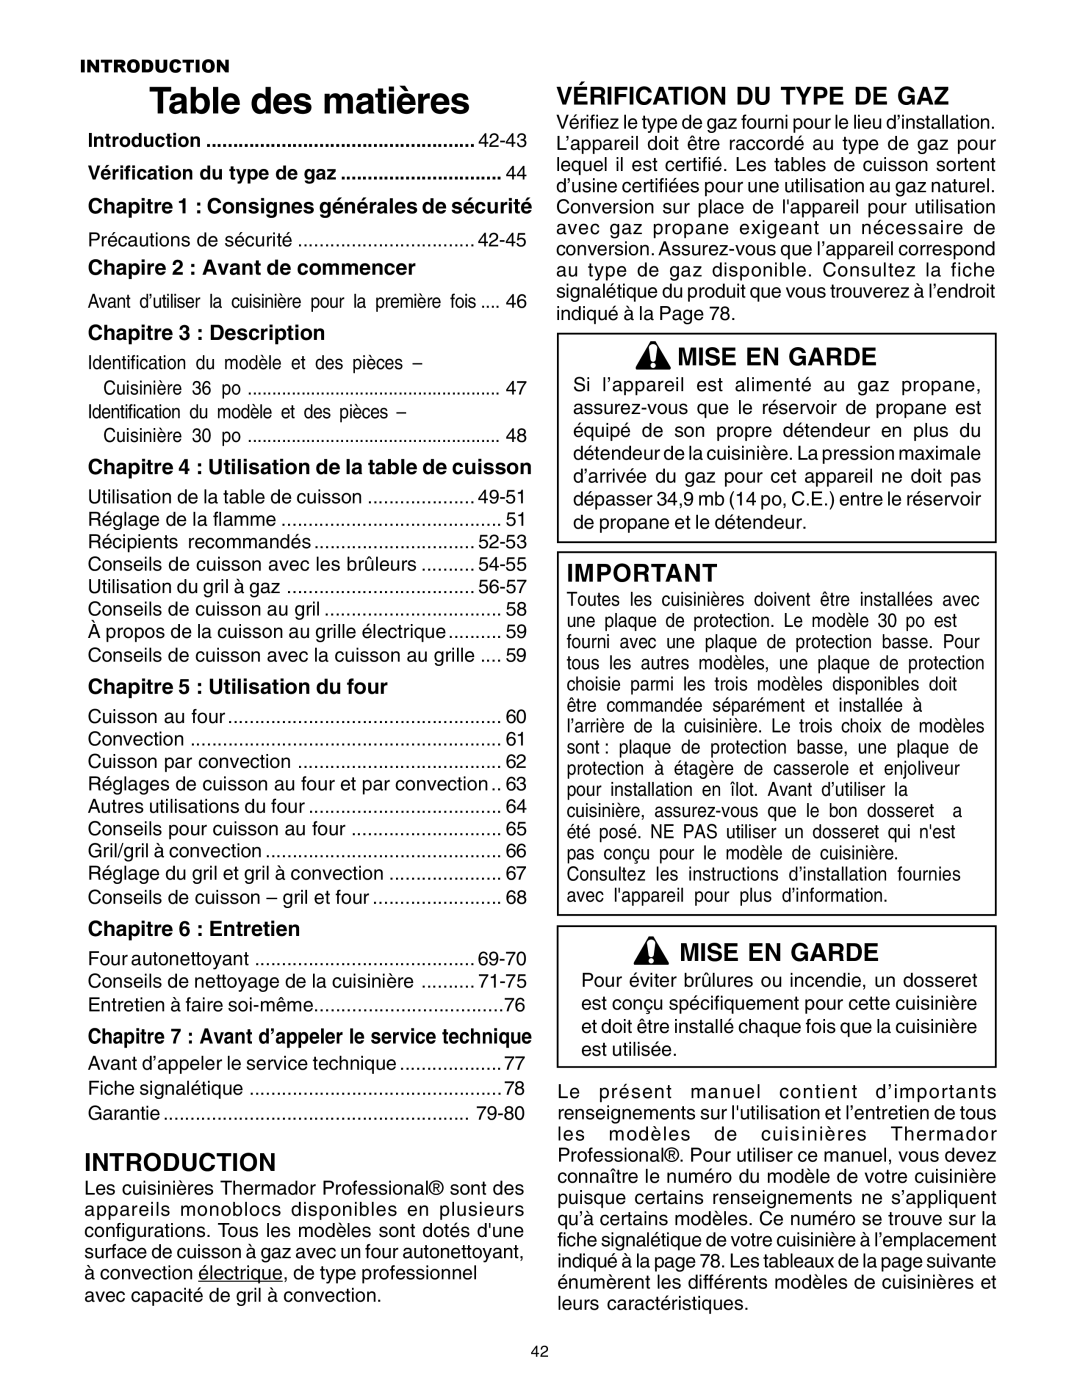 Thermador DP30 manual Vérification Du Type De Gaz, Mise En Garde, Chapire 2 : Avant de commencer, Chapitre 3 Description 